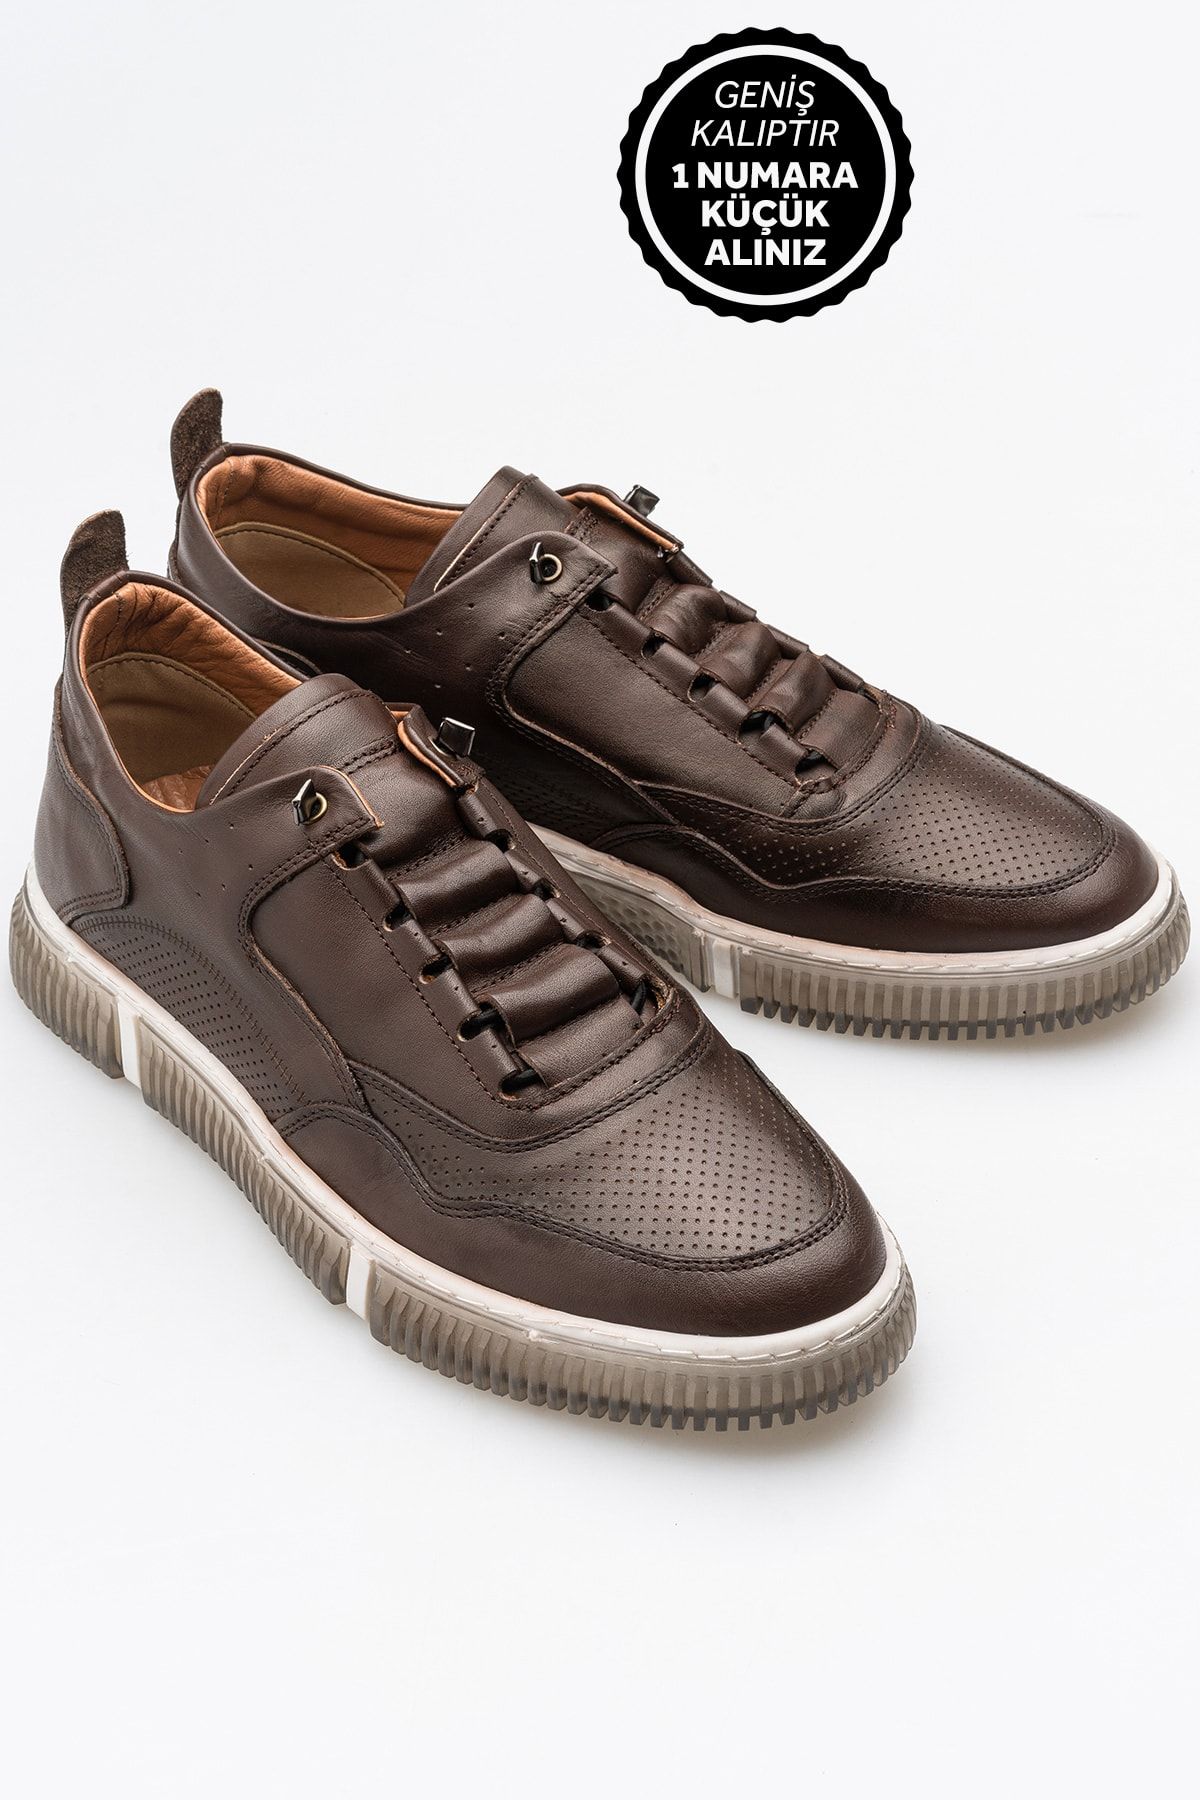 LUSIVE Kahverengi Erkek %100 Hakiki Deri Bağcıksız Rahat Günlük Ayakkabı